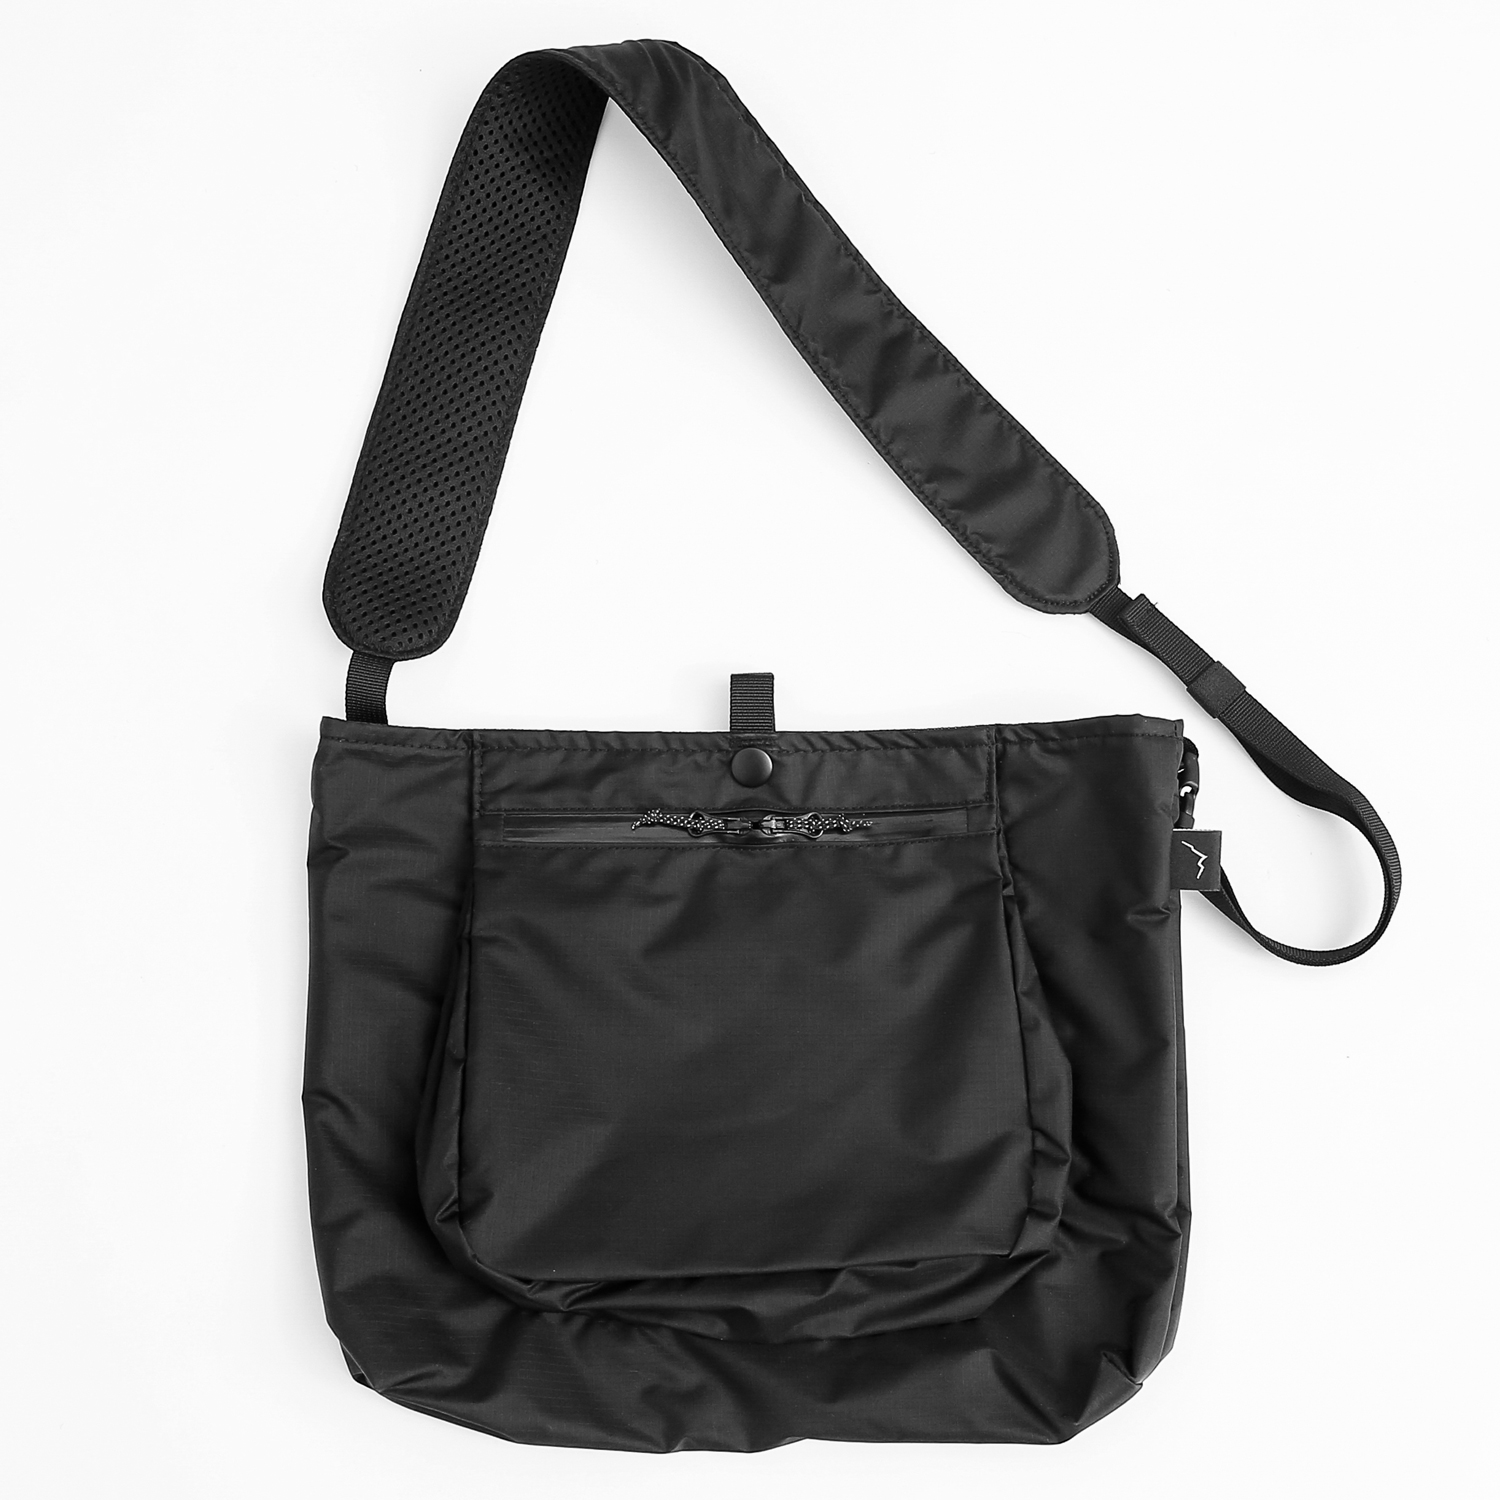 CAYL Light Shoulder Bag / Black